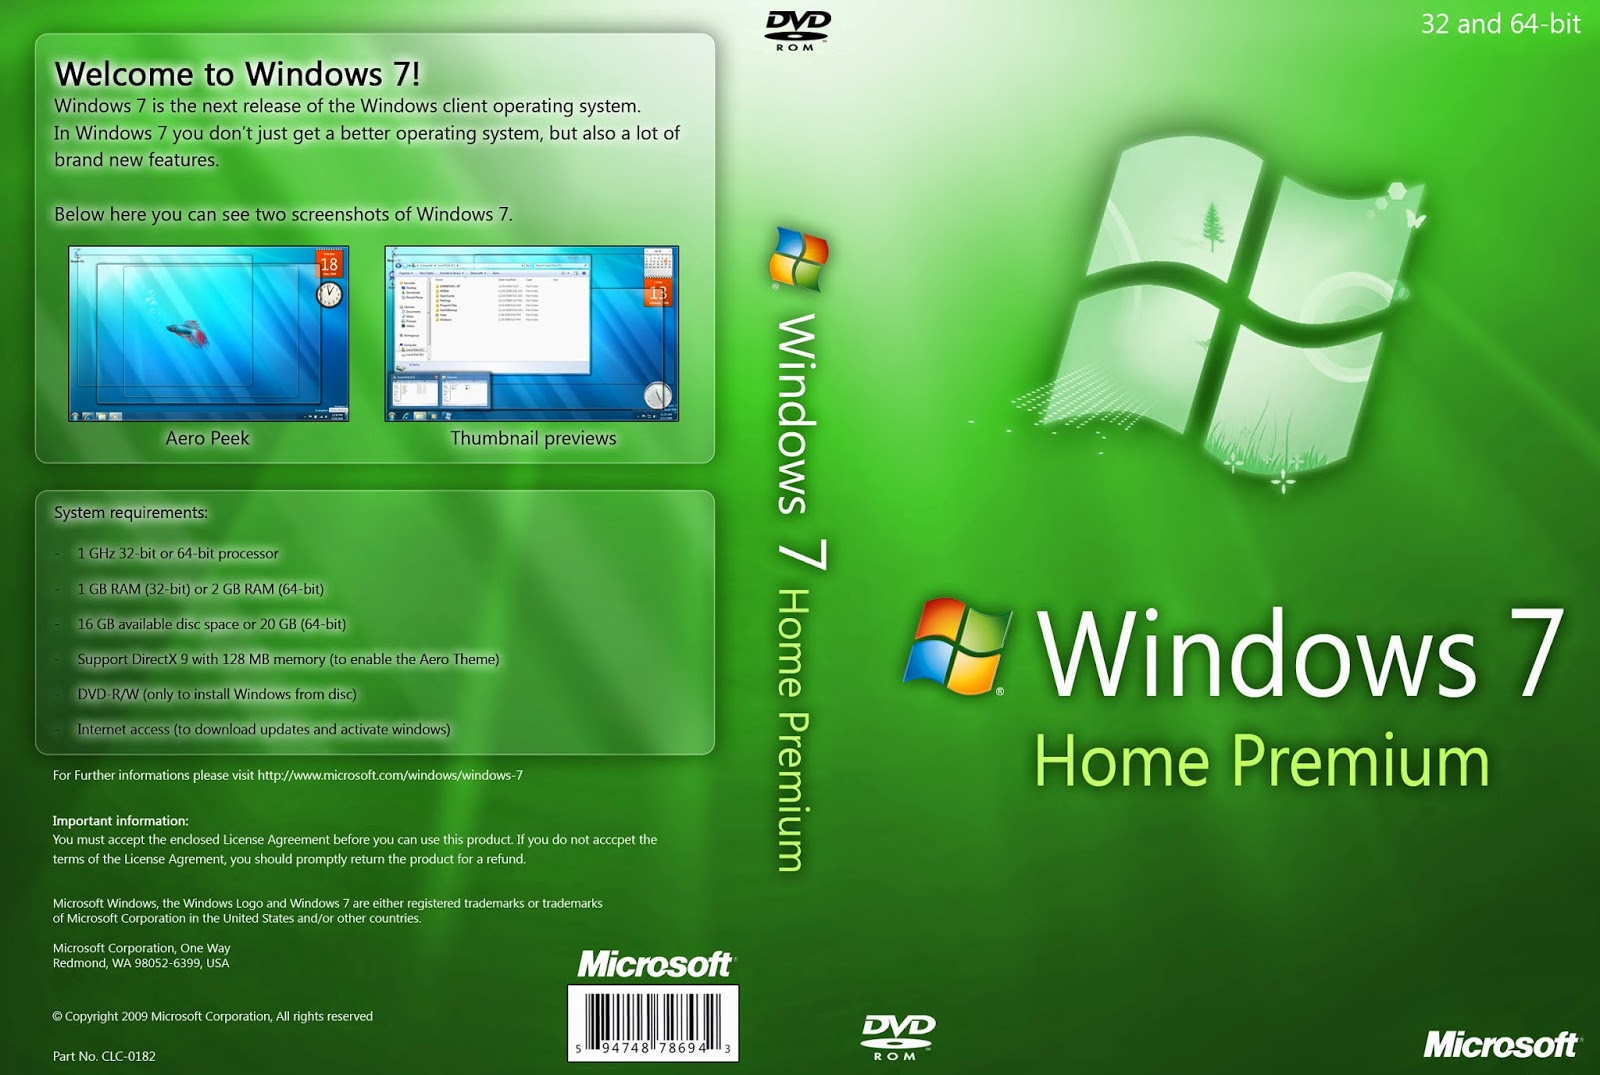 النسخة الأصلية الخام من ويندوز سفن هوم بريميم 2014 Windows 7 Home Premium SP1 للنواتين 32 و 64 بت للتحميل برابط واحد مباشر